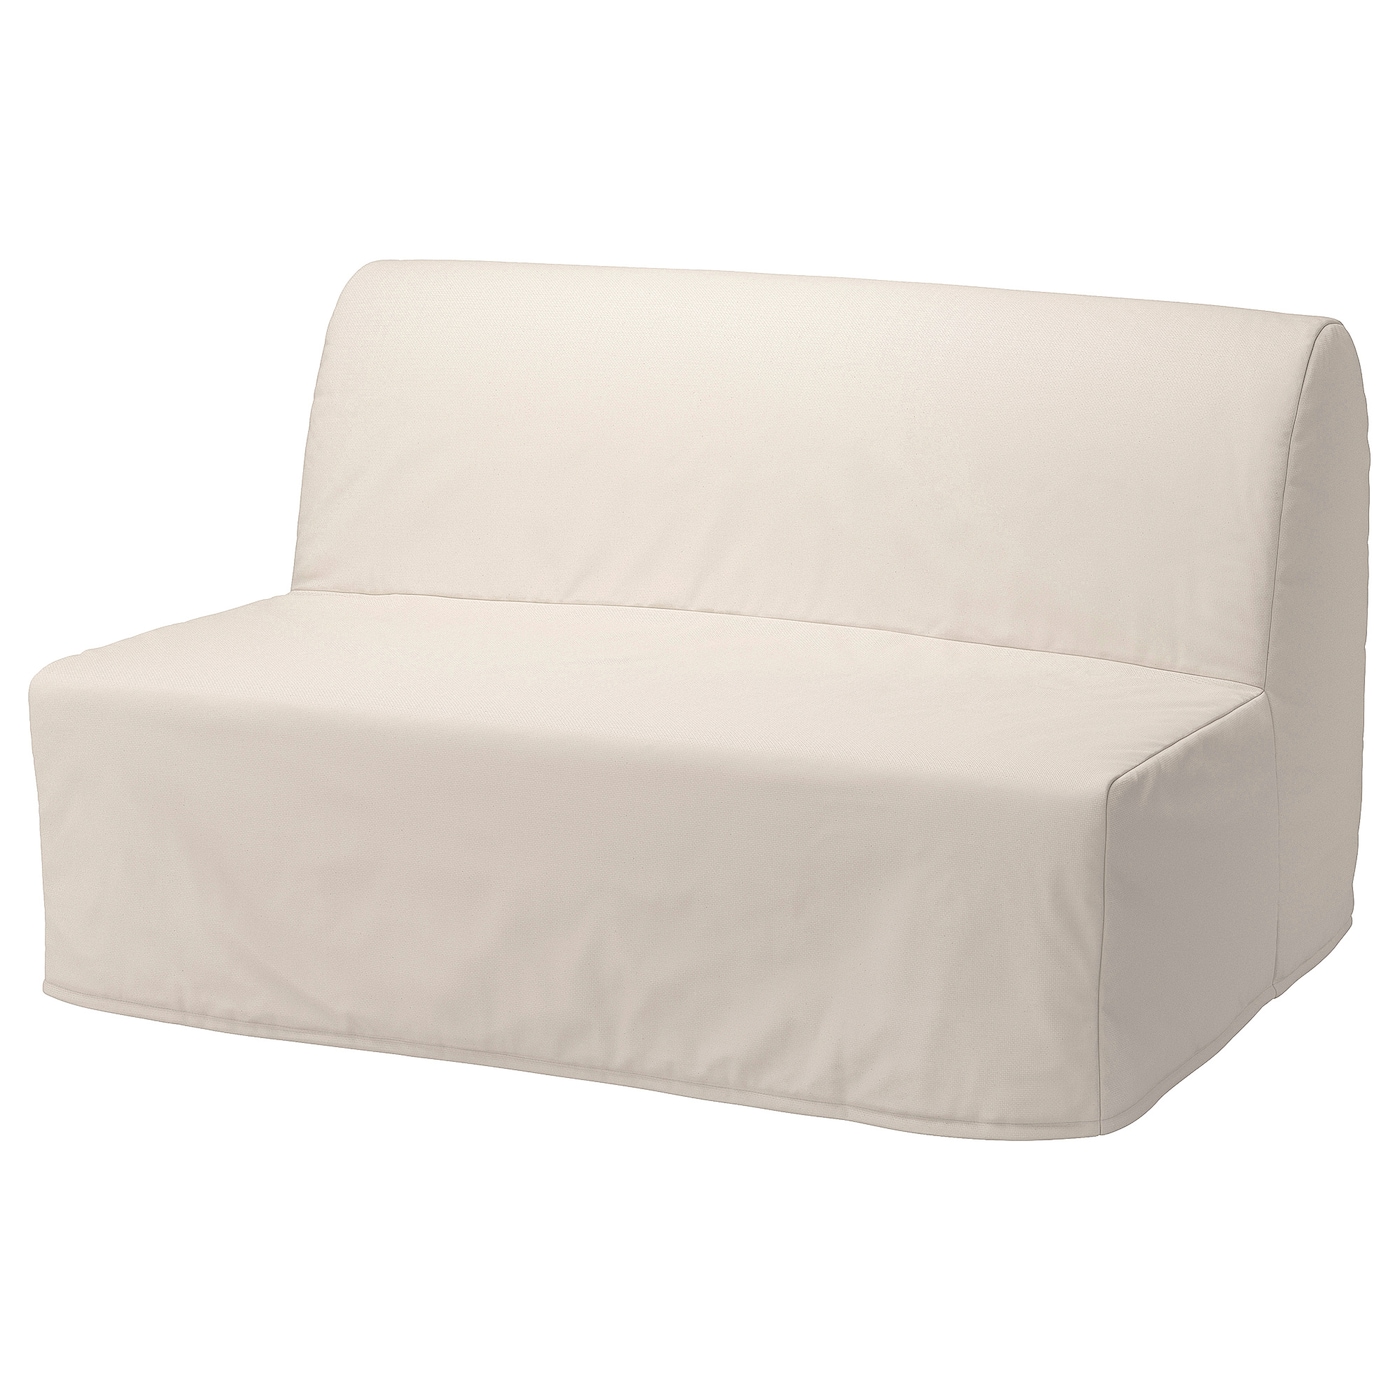 ЛИКСЕЛЕ ЛЕВОС 2 раскладных дивана-кровати, Ранста натуральный цвет LYCKSELE LÖVÅS IKEA чехол для трёхместного дивана karna без юбки цвет кофейный